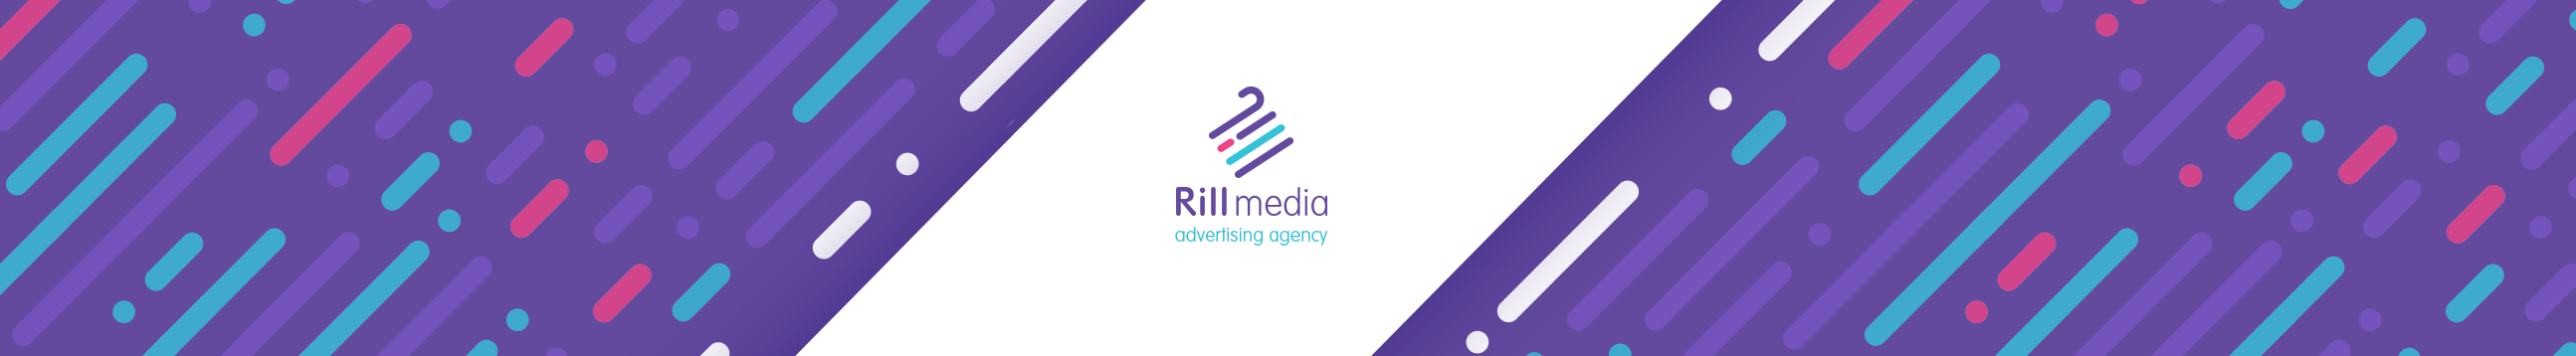 Rill Medias profilbanner